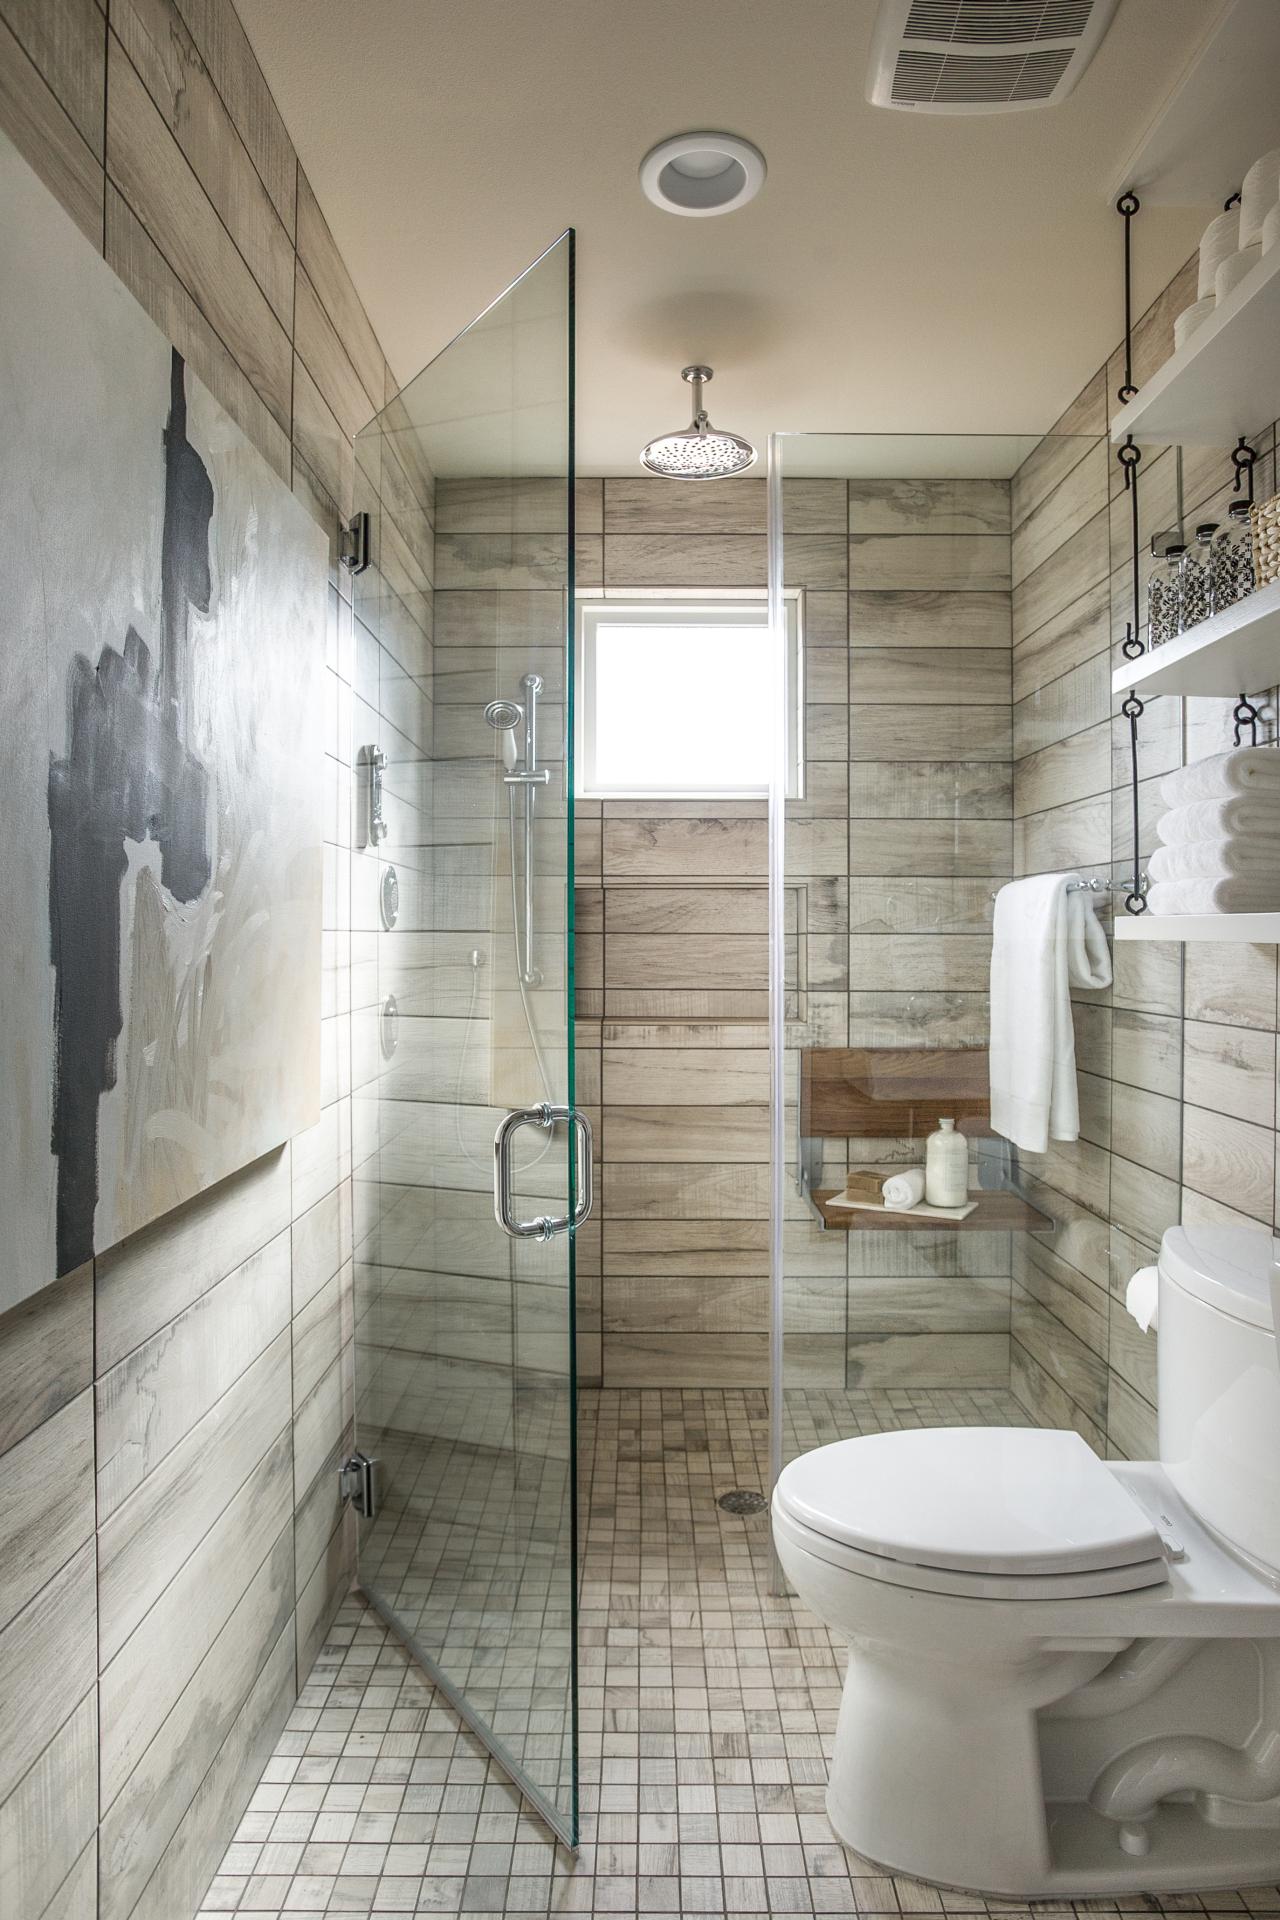 9 Bold Bathroom Tile Designs Hgtv S Decorating Design Blog Hgtv,Coastal Design Living Room